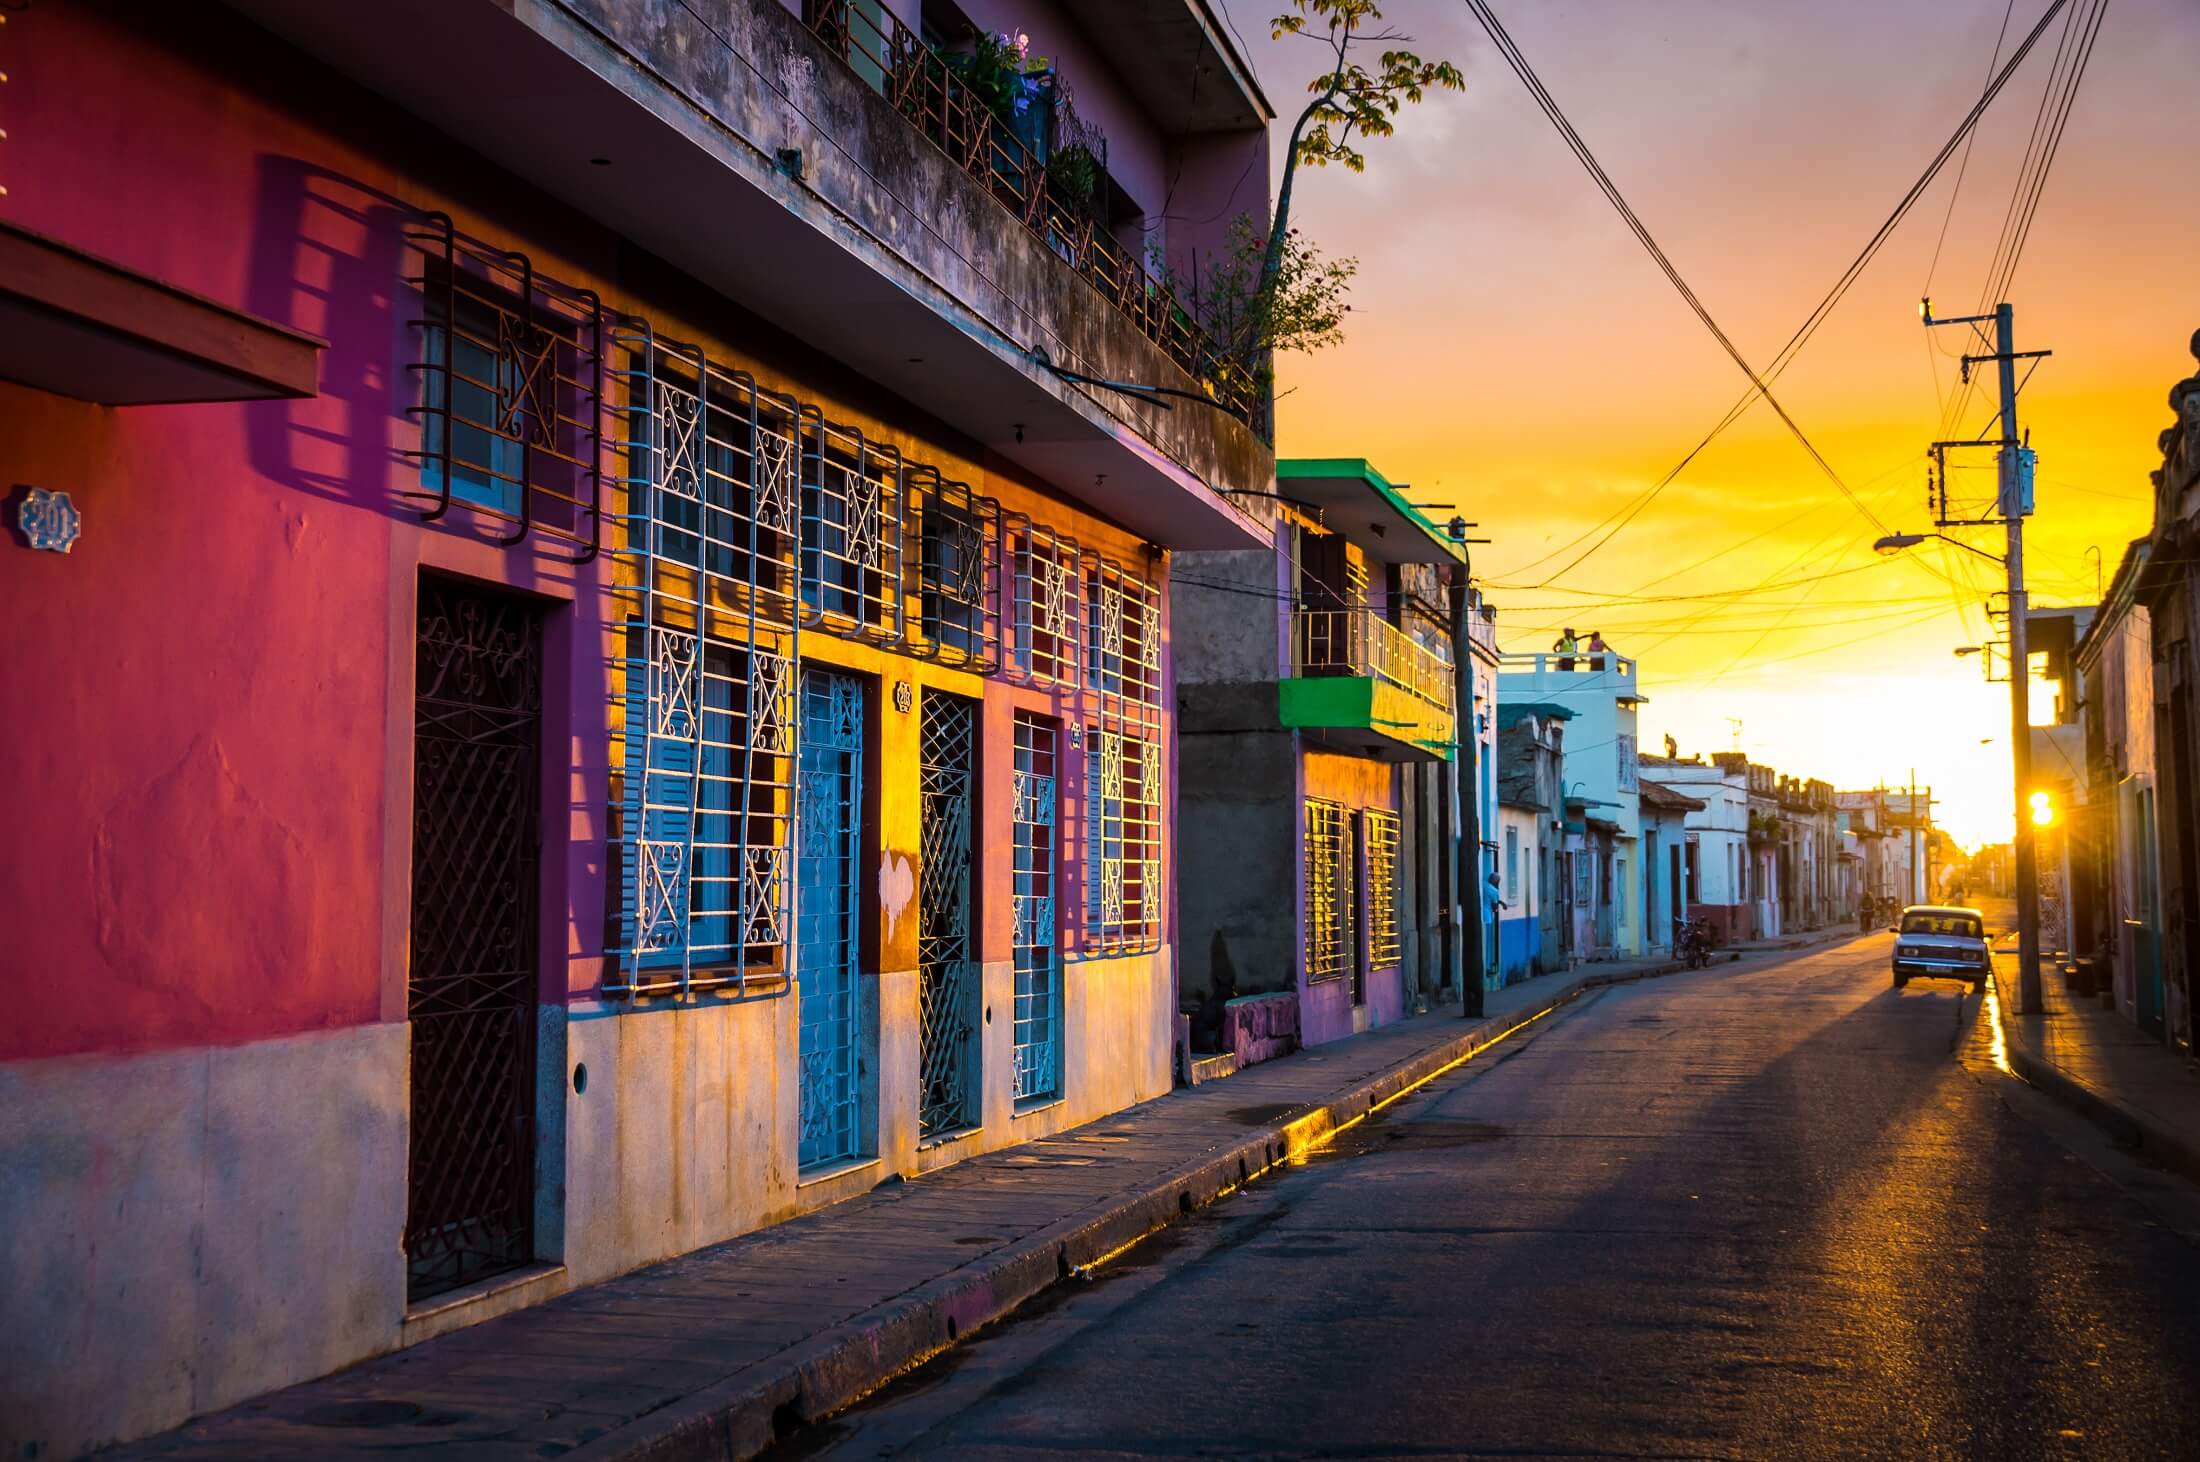 Camaguey, KUBA - Ciepłe światło zachodu słońca świeci na pustych ulicach centrum miasta światowego dziedzictwa w kubańskim mieście Camaguey, unikalnym mieście Ameryki Łacińskiej na Karaibach - styczeń 2016